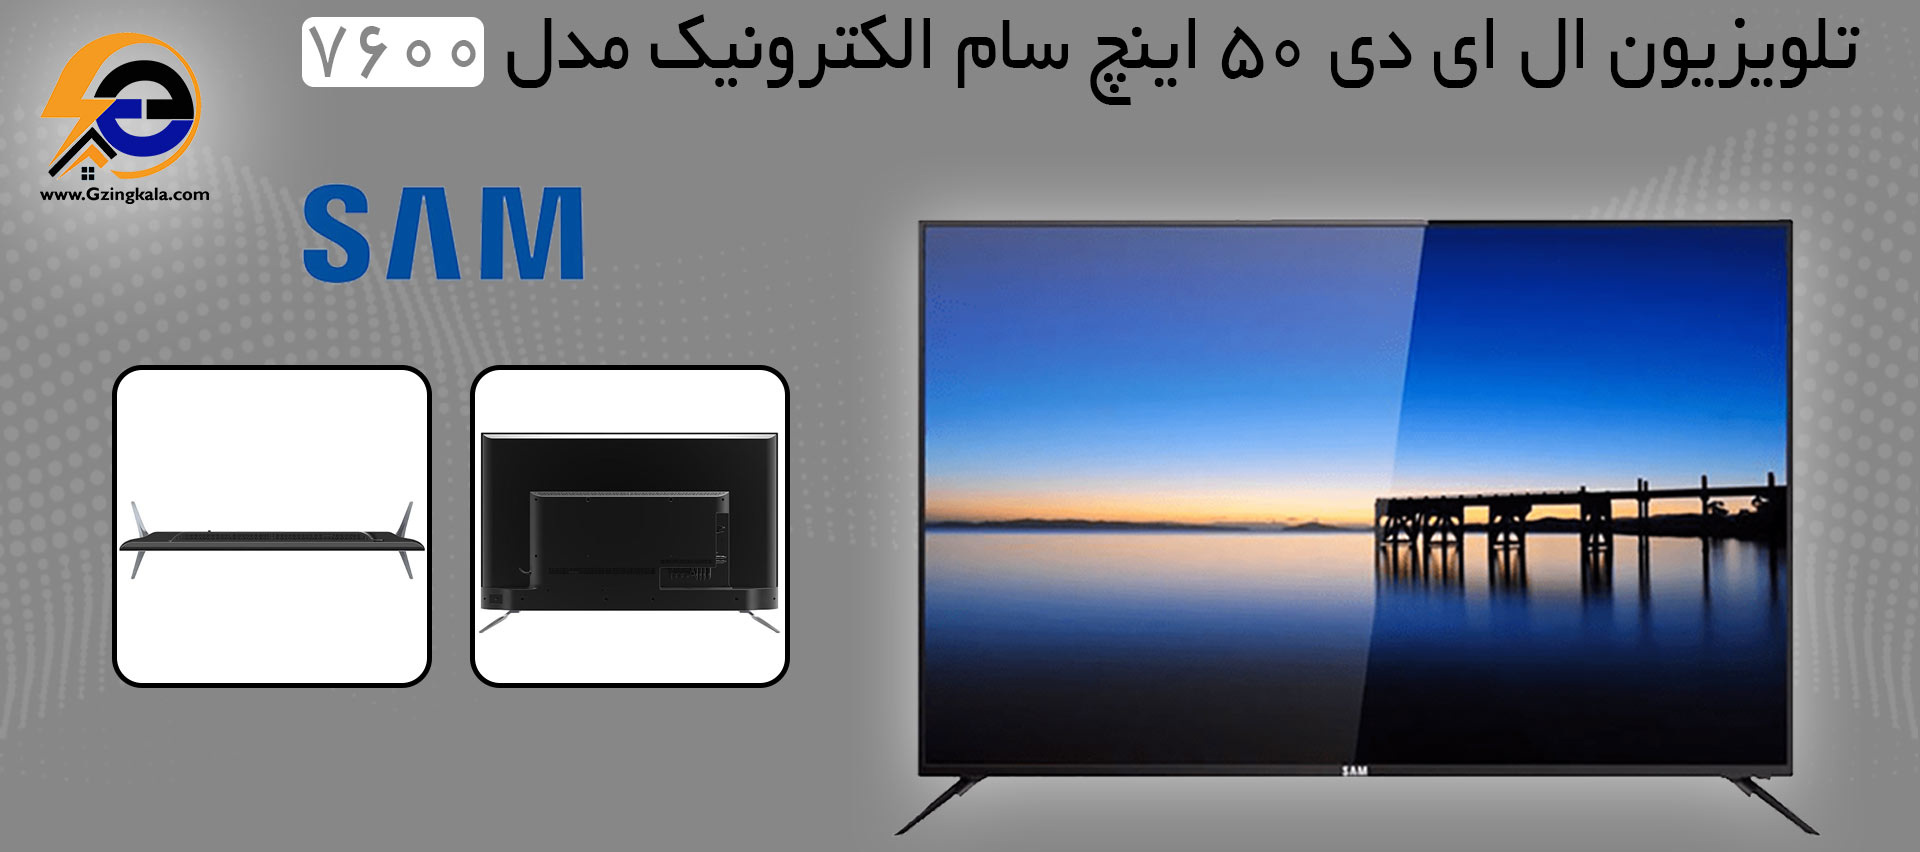 تلویزیون ال ای دی 50 اینچ سام الکترونیک مدل 7600